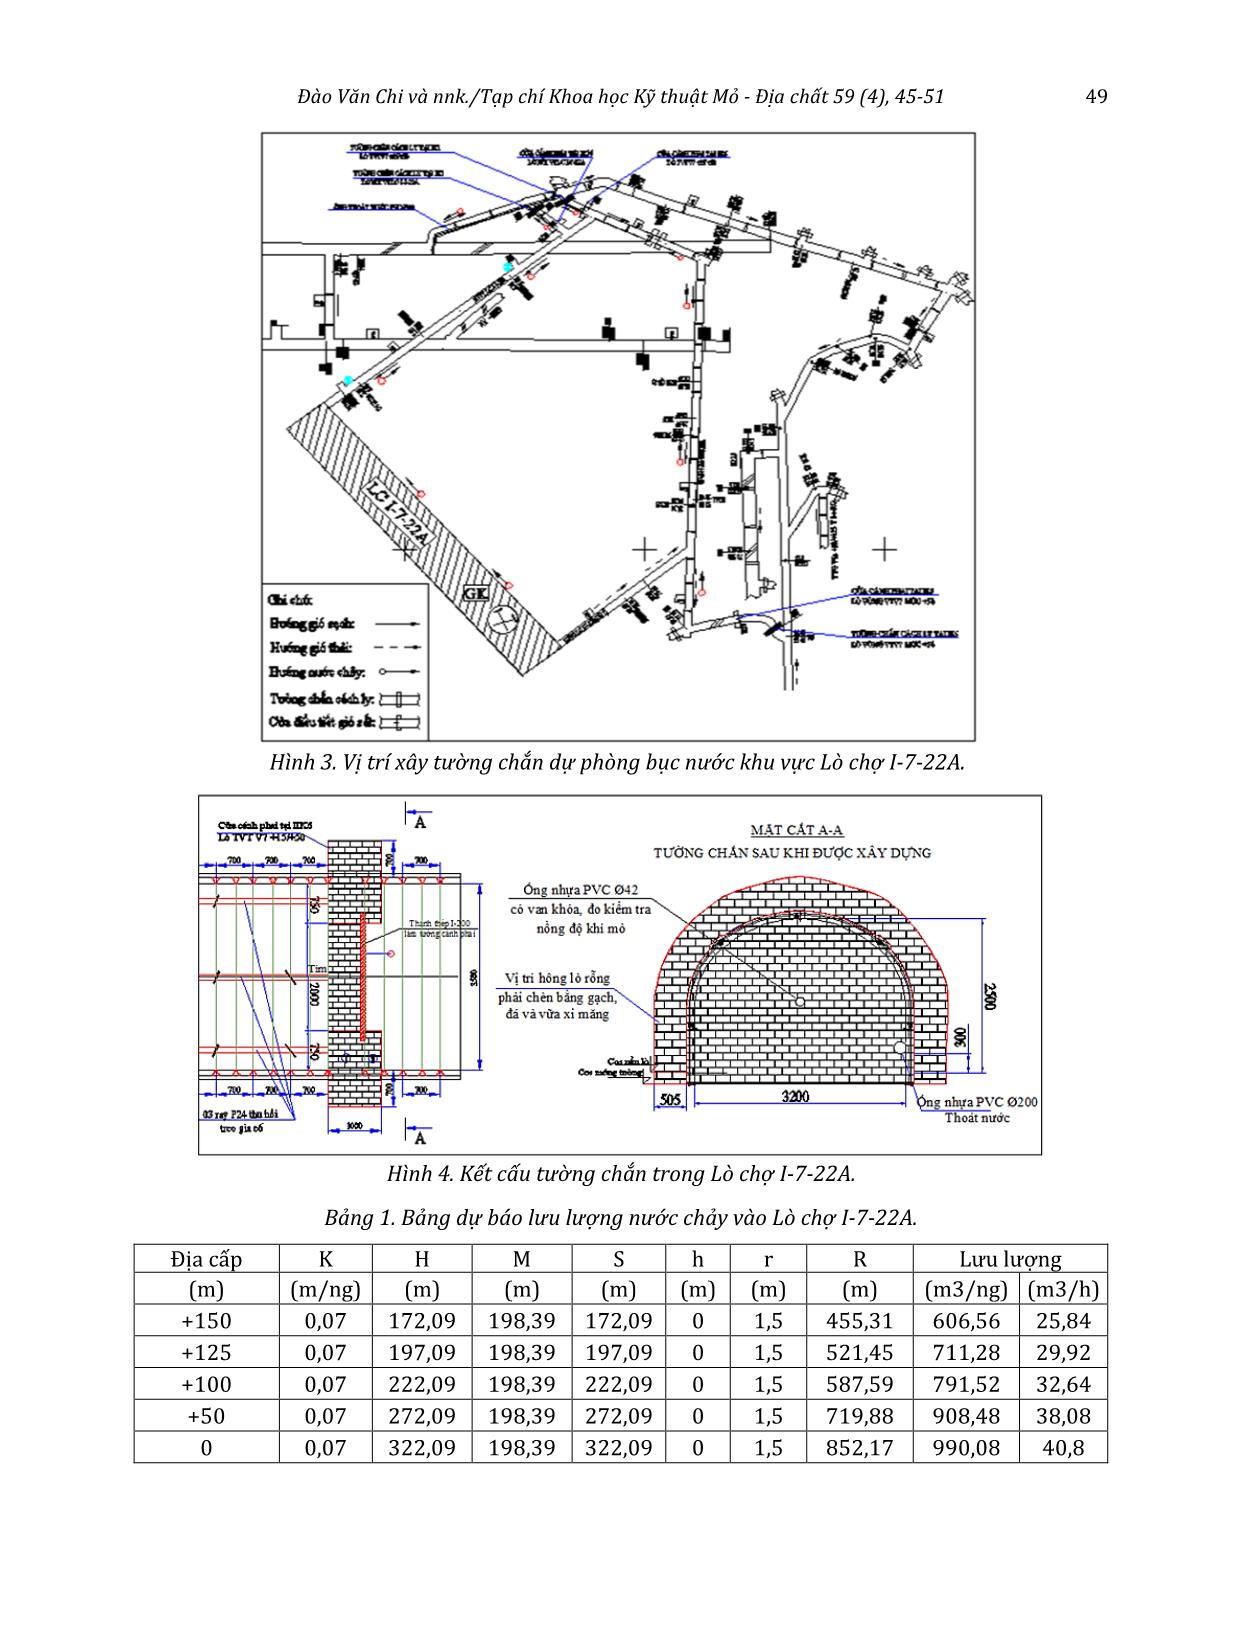 Nghiên cứu công nghệ khai thác hợp lý và đề xuất giải pháp thoát nước cho Lò chợ I-7-22A nằm dưới suối gốc Vạng - Công ty than Nam Mẫu - TKV trang 5